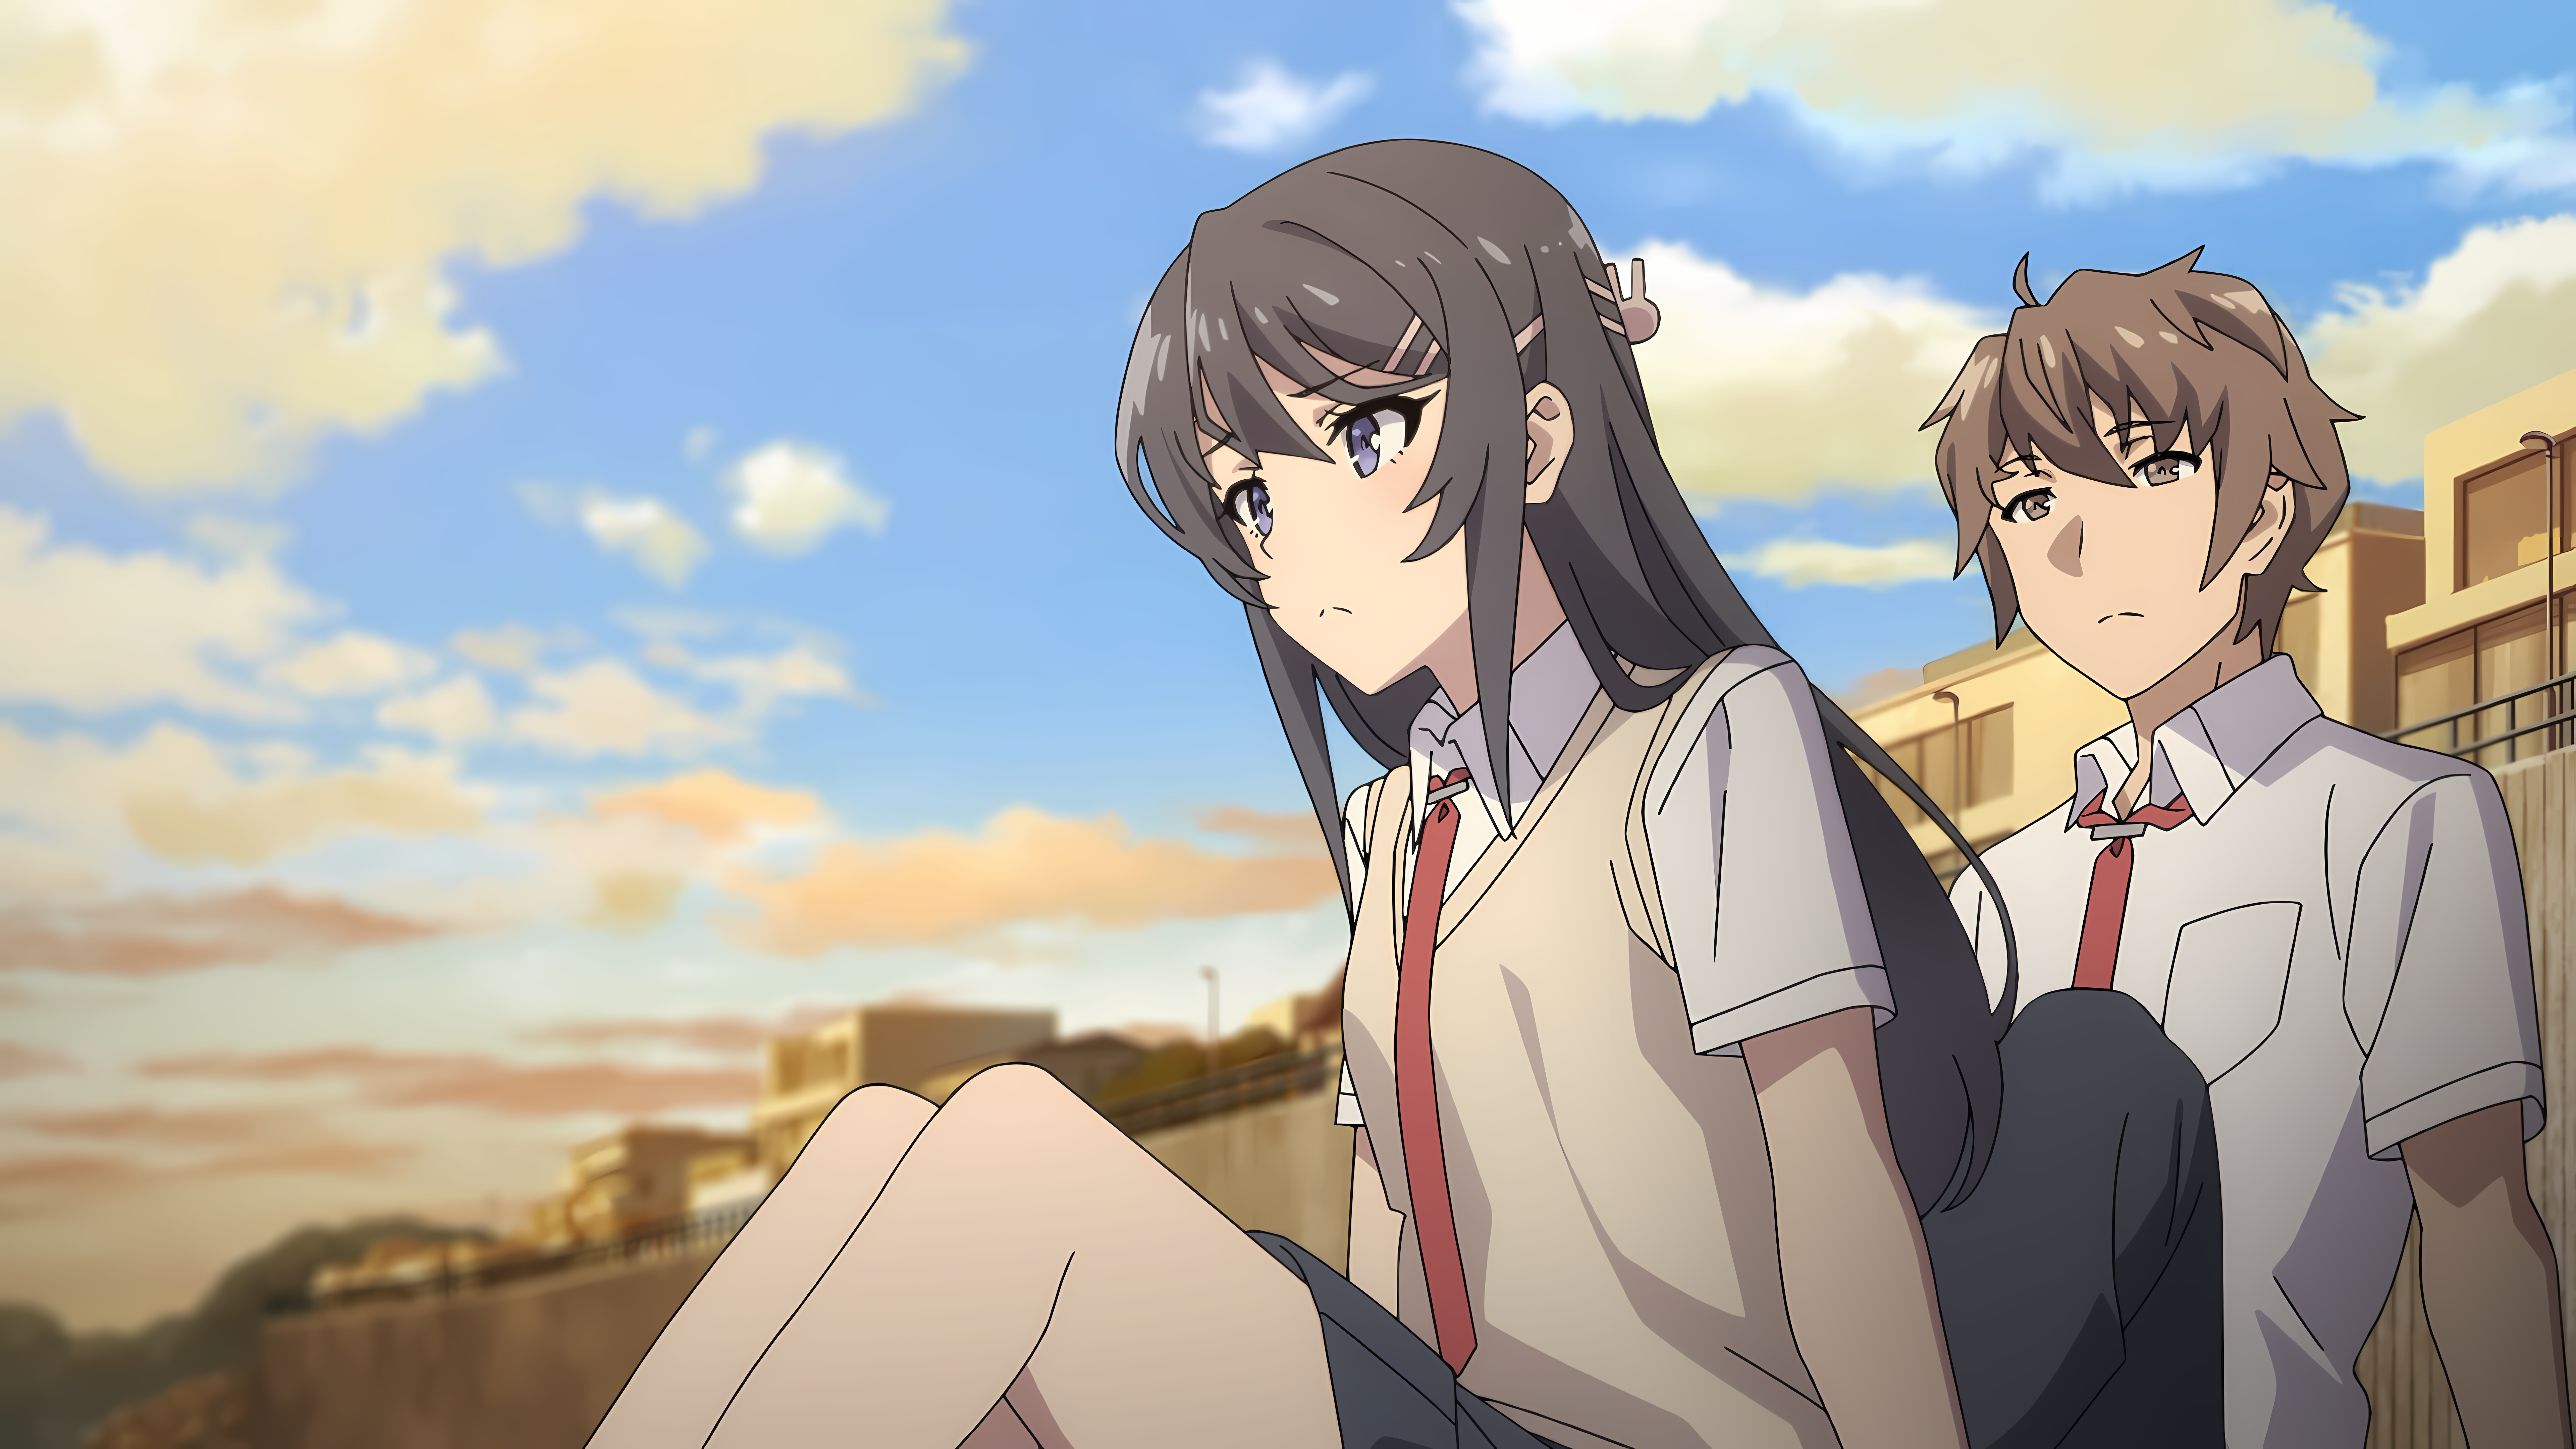 Sakurajima Mai Seishun Buta Yar Wa Bunny Girl Senpai No Yume Wo Minai Anime Anime Girls Anime Boys A 7680x4320